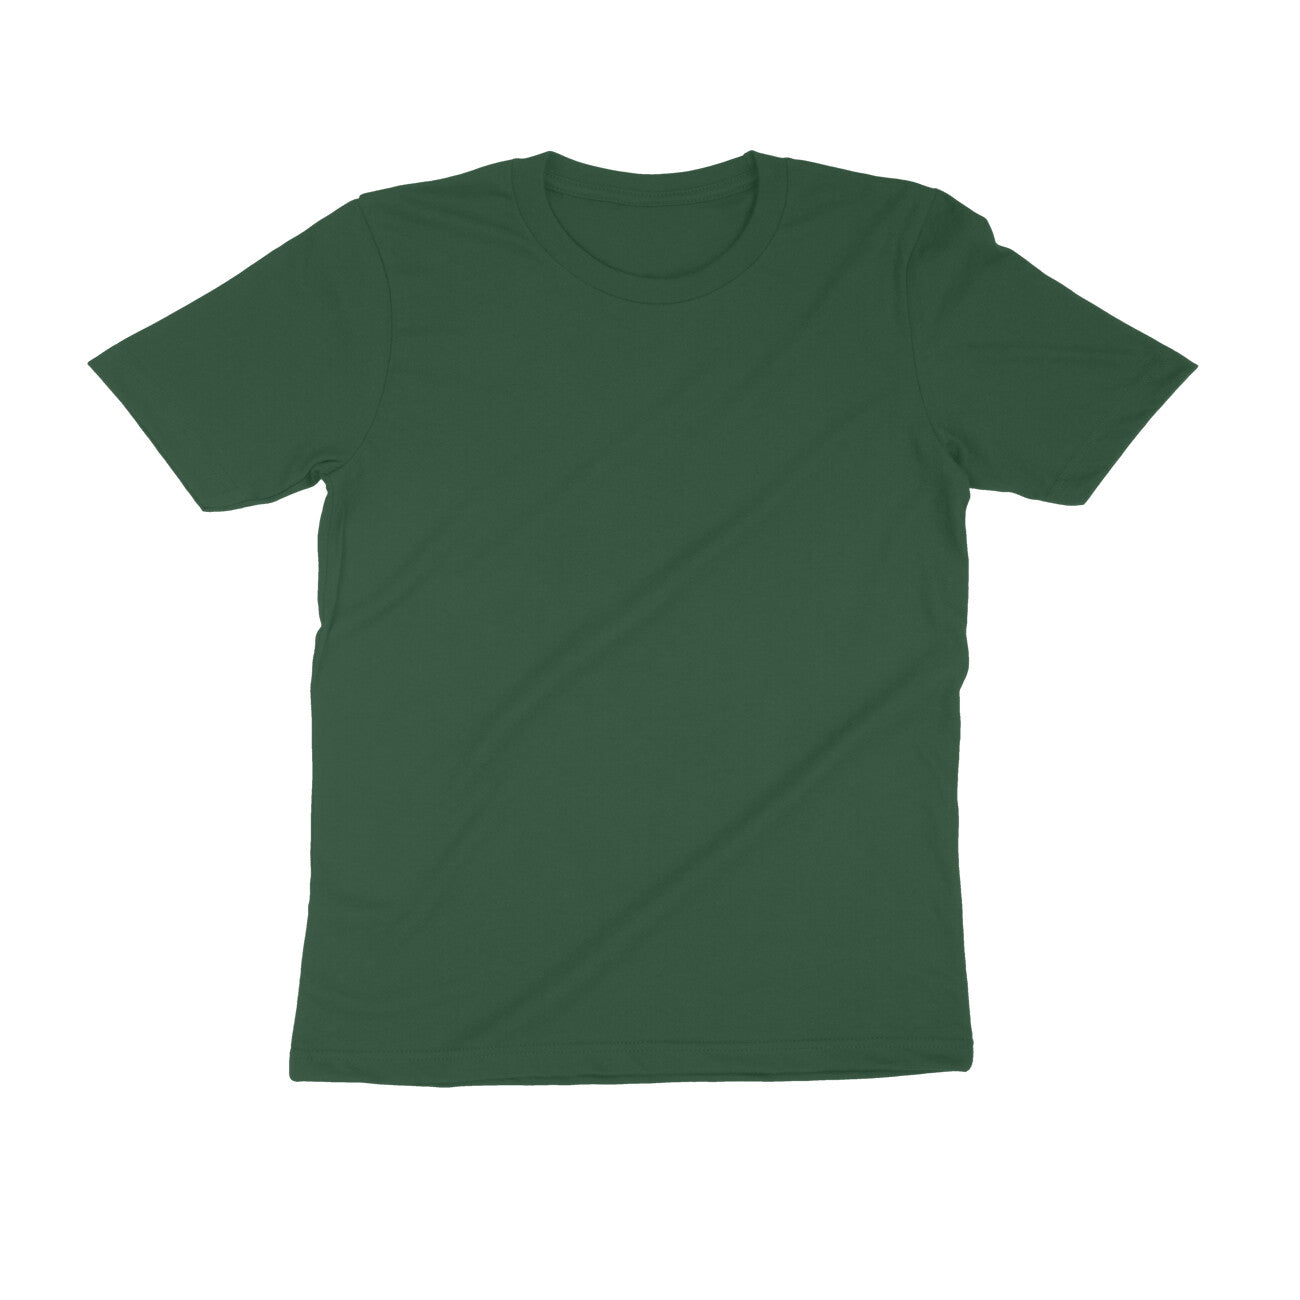 Montage - Back design T-shirt - Men